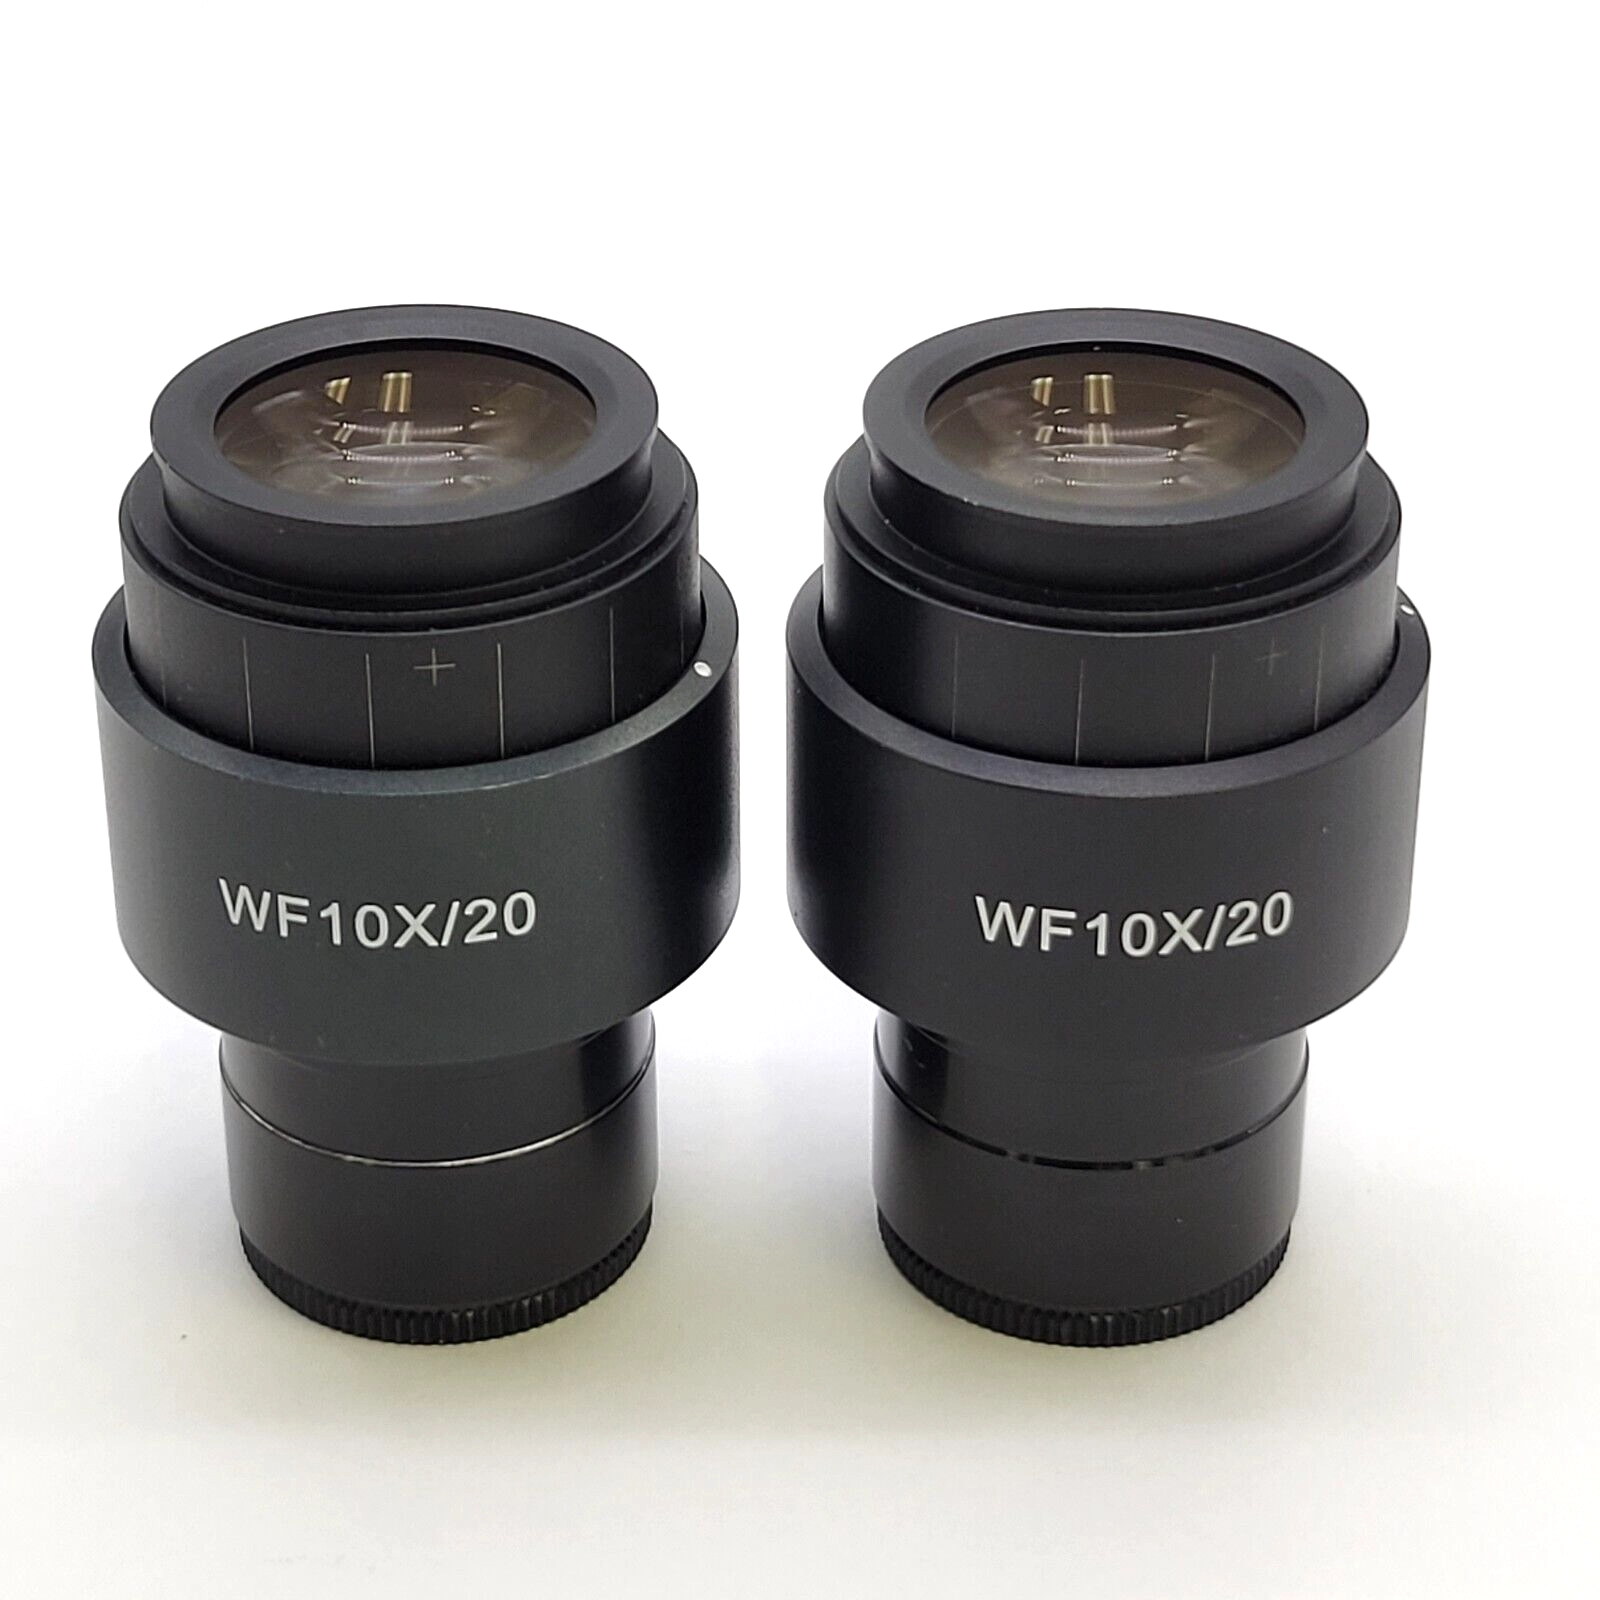 Zeiss Microscope Eyepiece Pair WF 10x/20 Primo 415500-1501-000